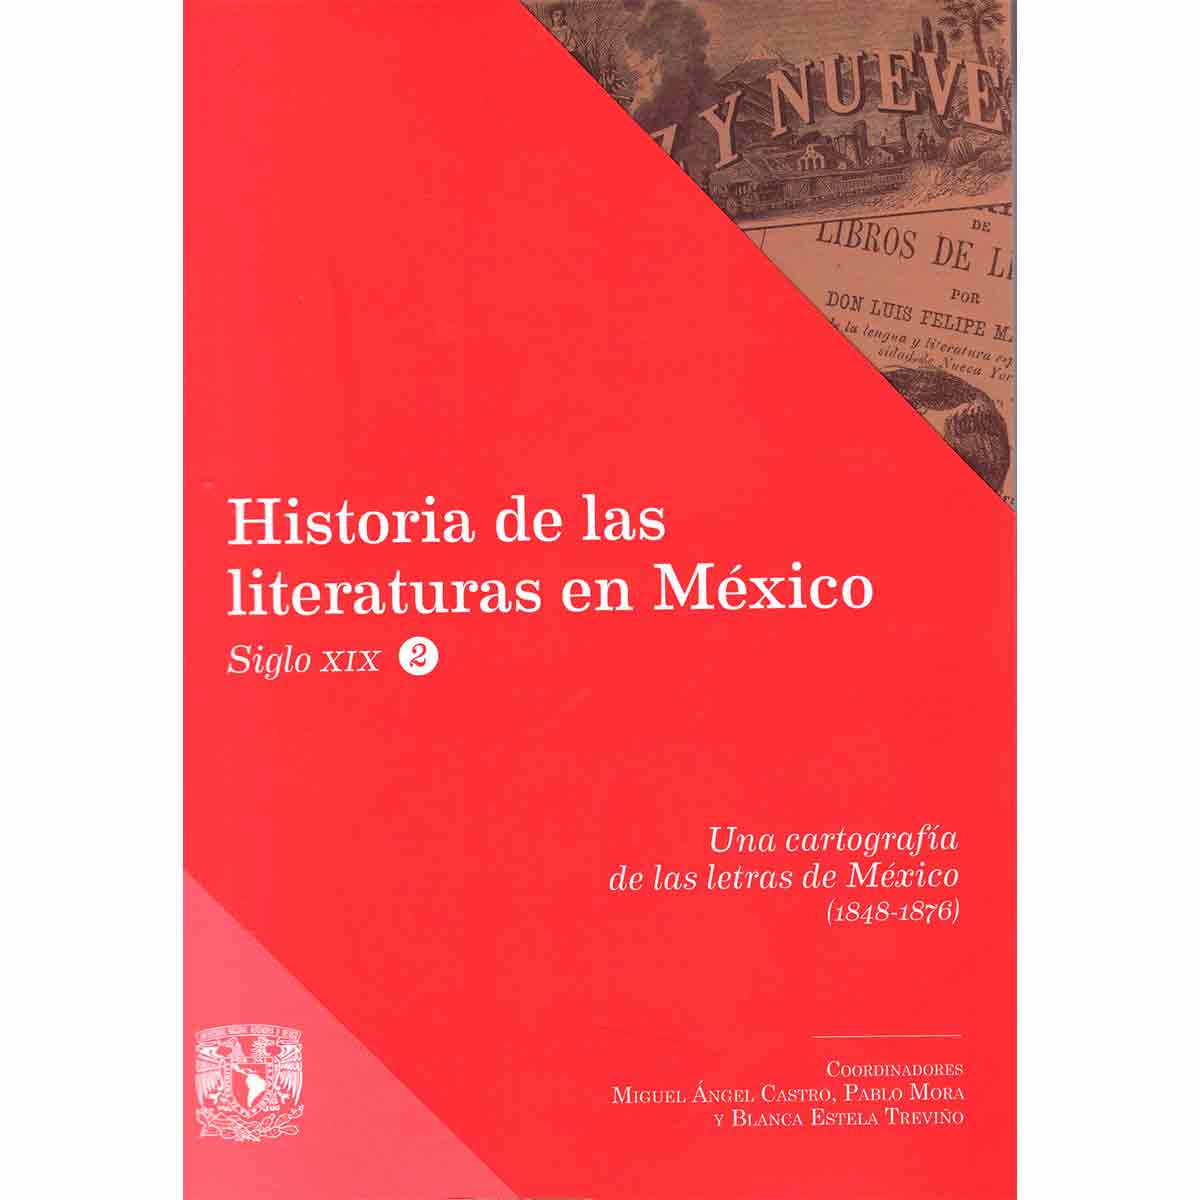 UNA CARTOGRAFÍA DE LAS LETRAS DE MÉXICO (1848-1876)